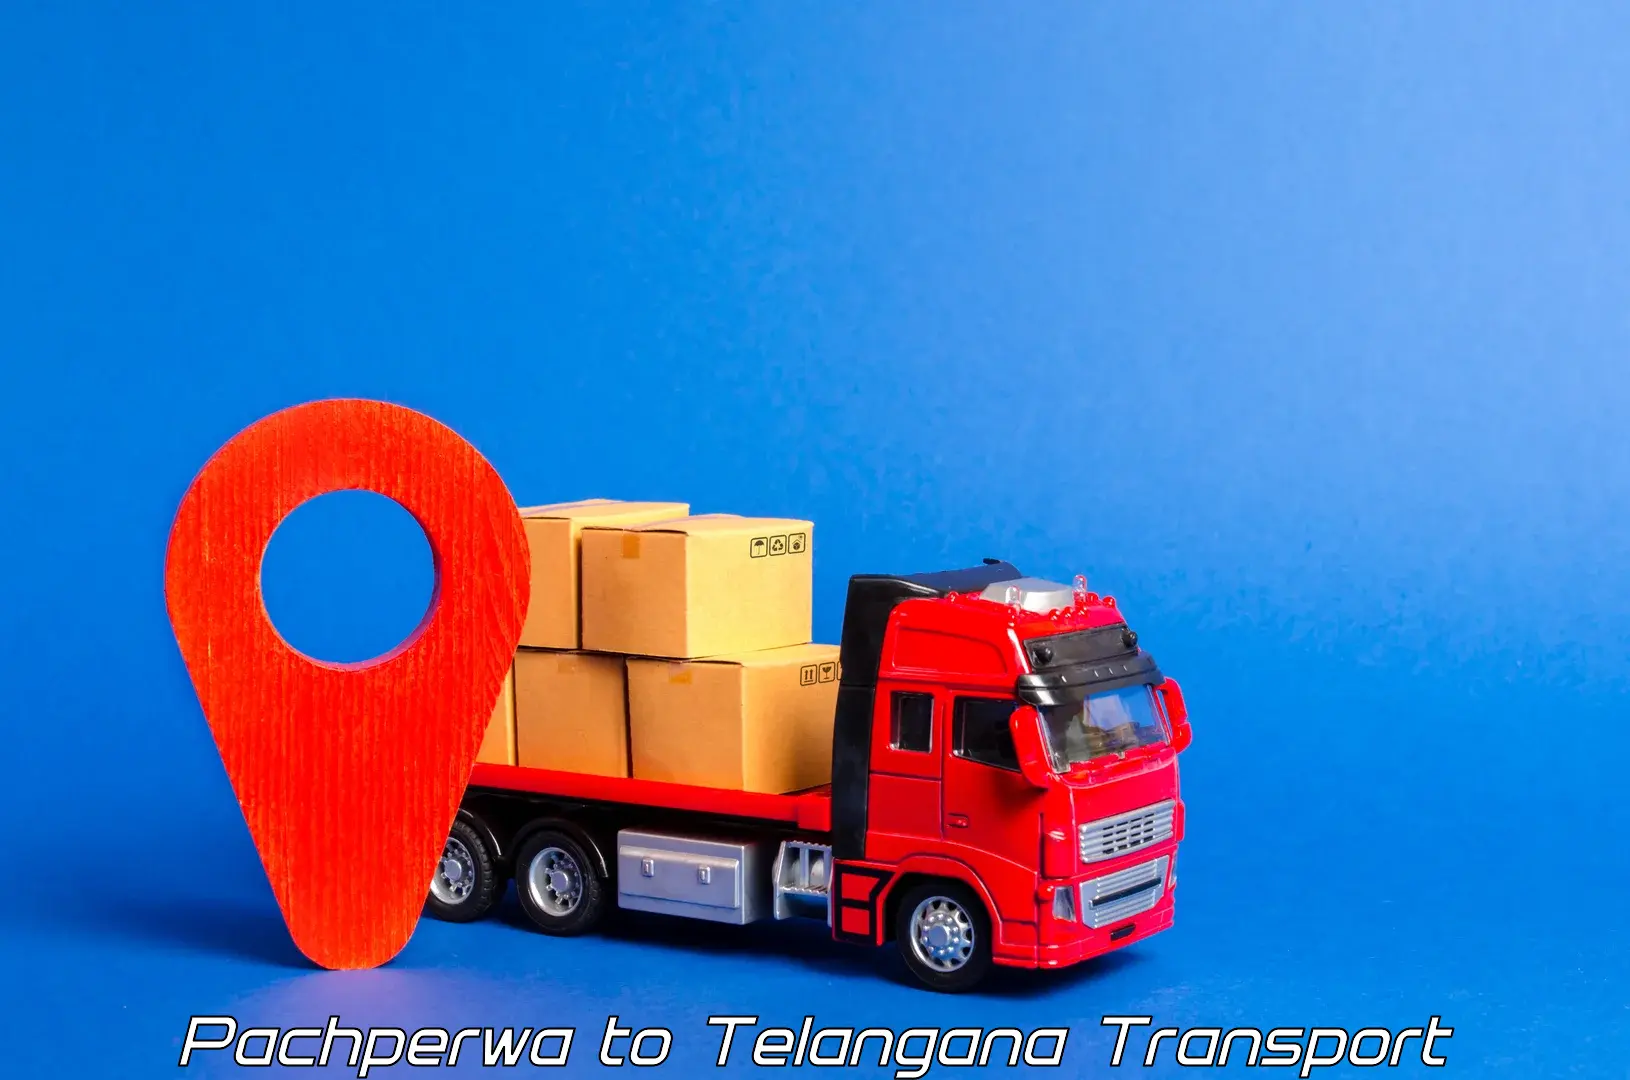 Truck transport companies in India in Pachperwa to Nellikuduru